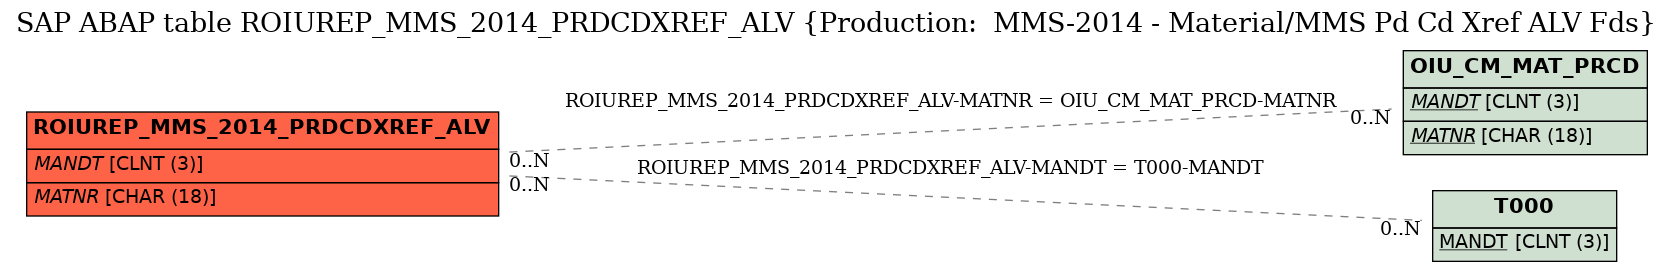 E-R Diagram for table ROIUREP_MMS_2014_PRDCDXREF_ALV (Production:  MMS-2014 - Material/MMS Pd Cd Xref ALV Fds)